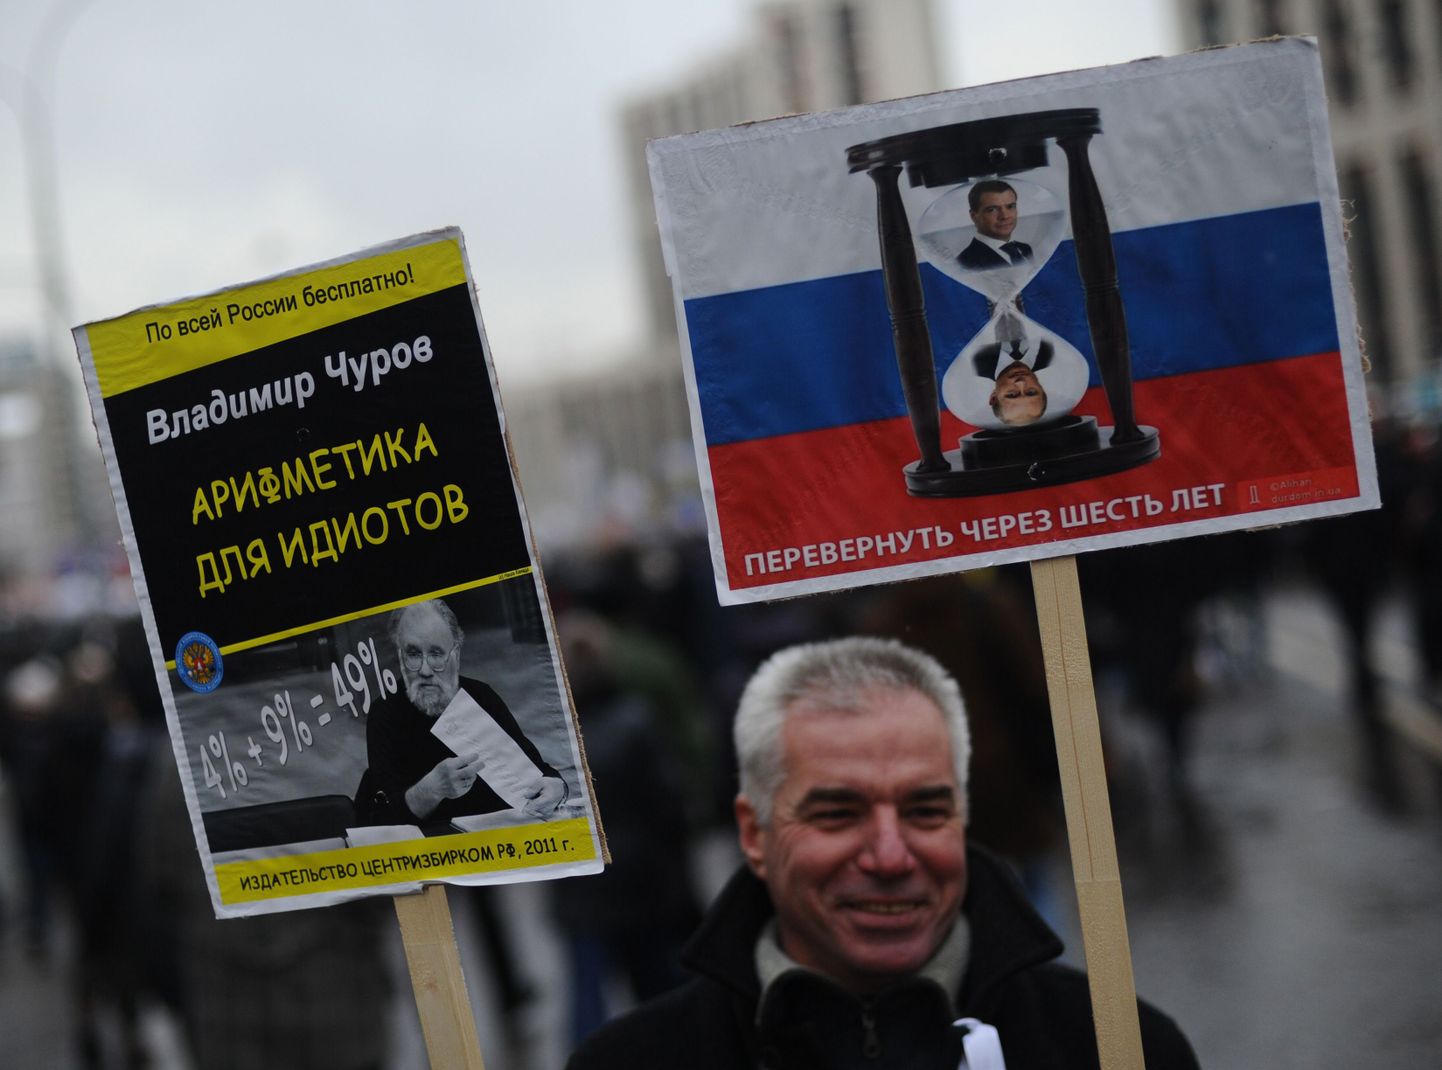 Loosunginäiteid 24. detsembri rahvakogunemiselt Moskvas. Putini ja Medvedevi pildiga liivakella juurde on  kirjutatud, et see tuleb kuue aasta pärast pöörata ümber. Paremal on aritmeetika idiootidele -- 4% + 9% = 49%.